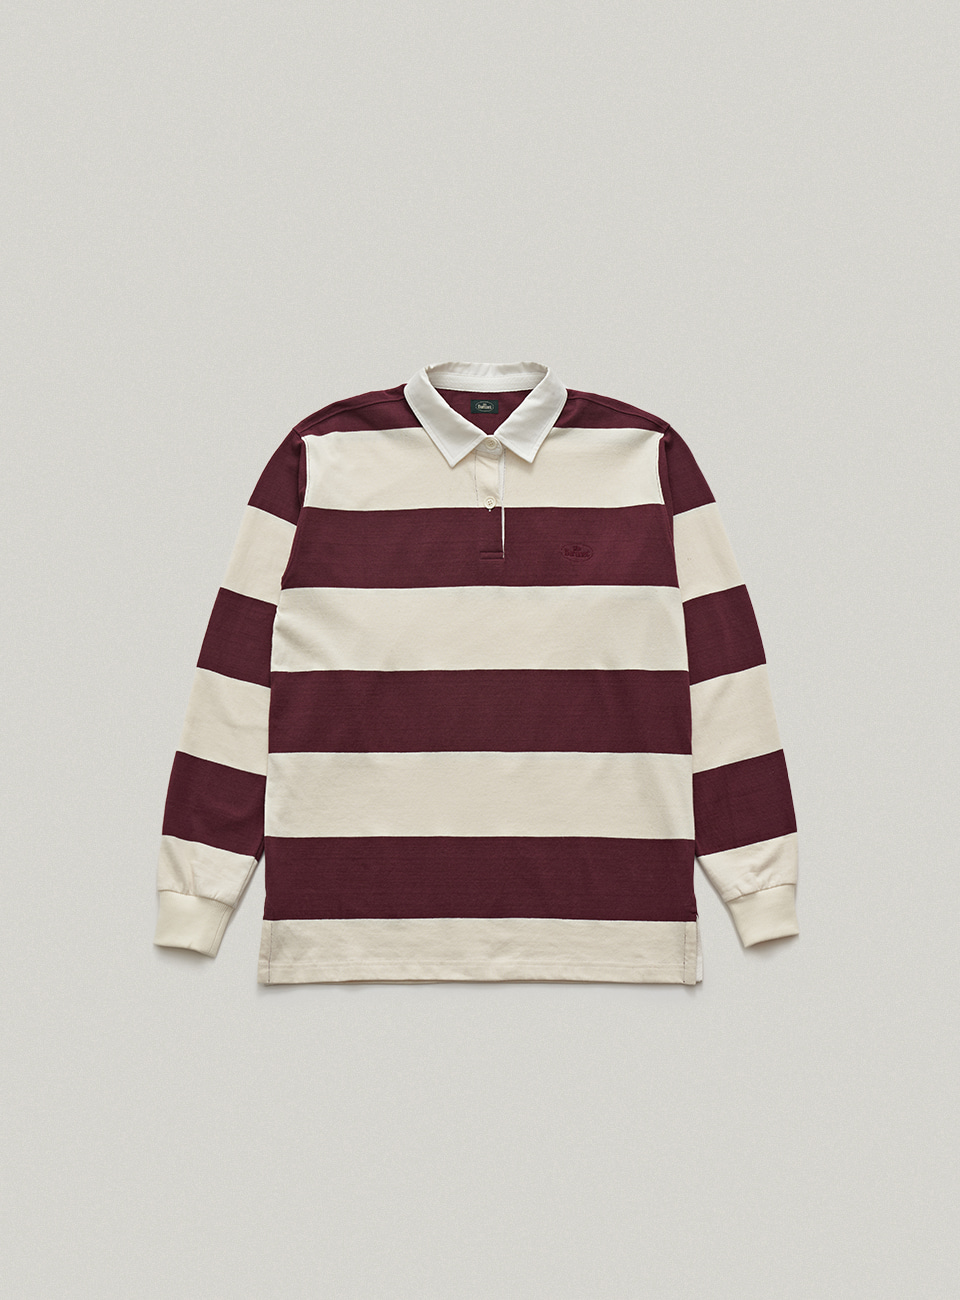 Burgundy Classic Striped Rugby Shirt[10월 말 순차 배송]